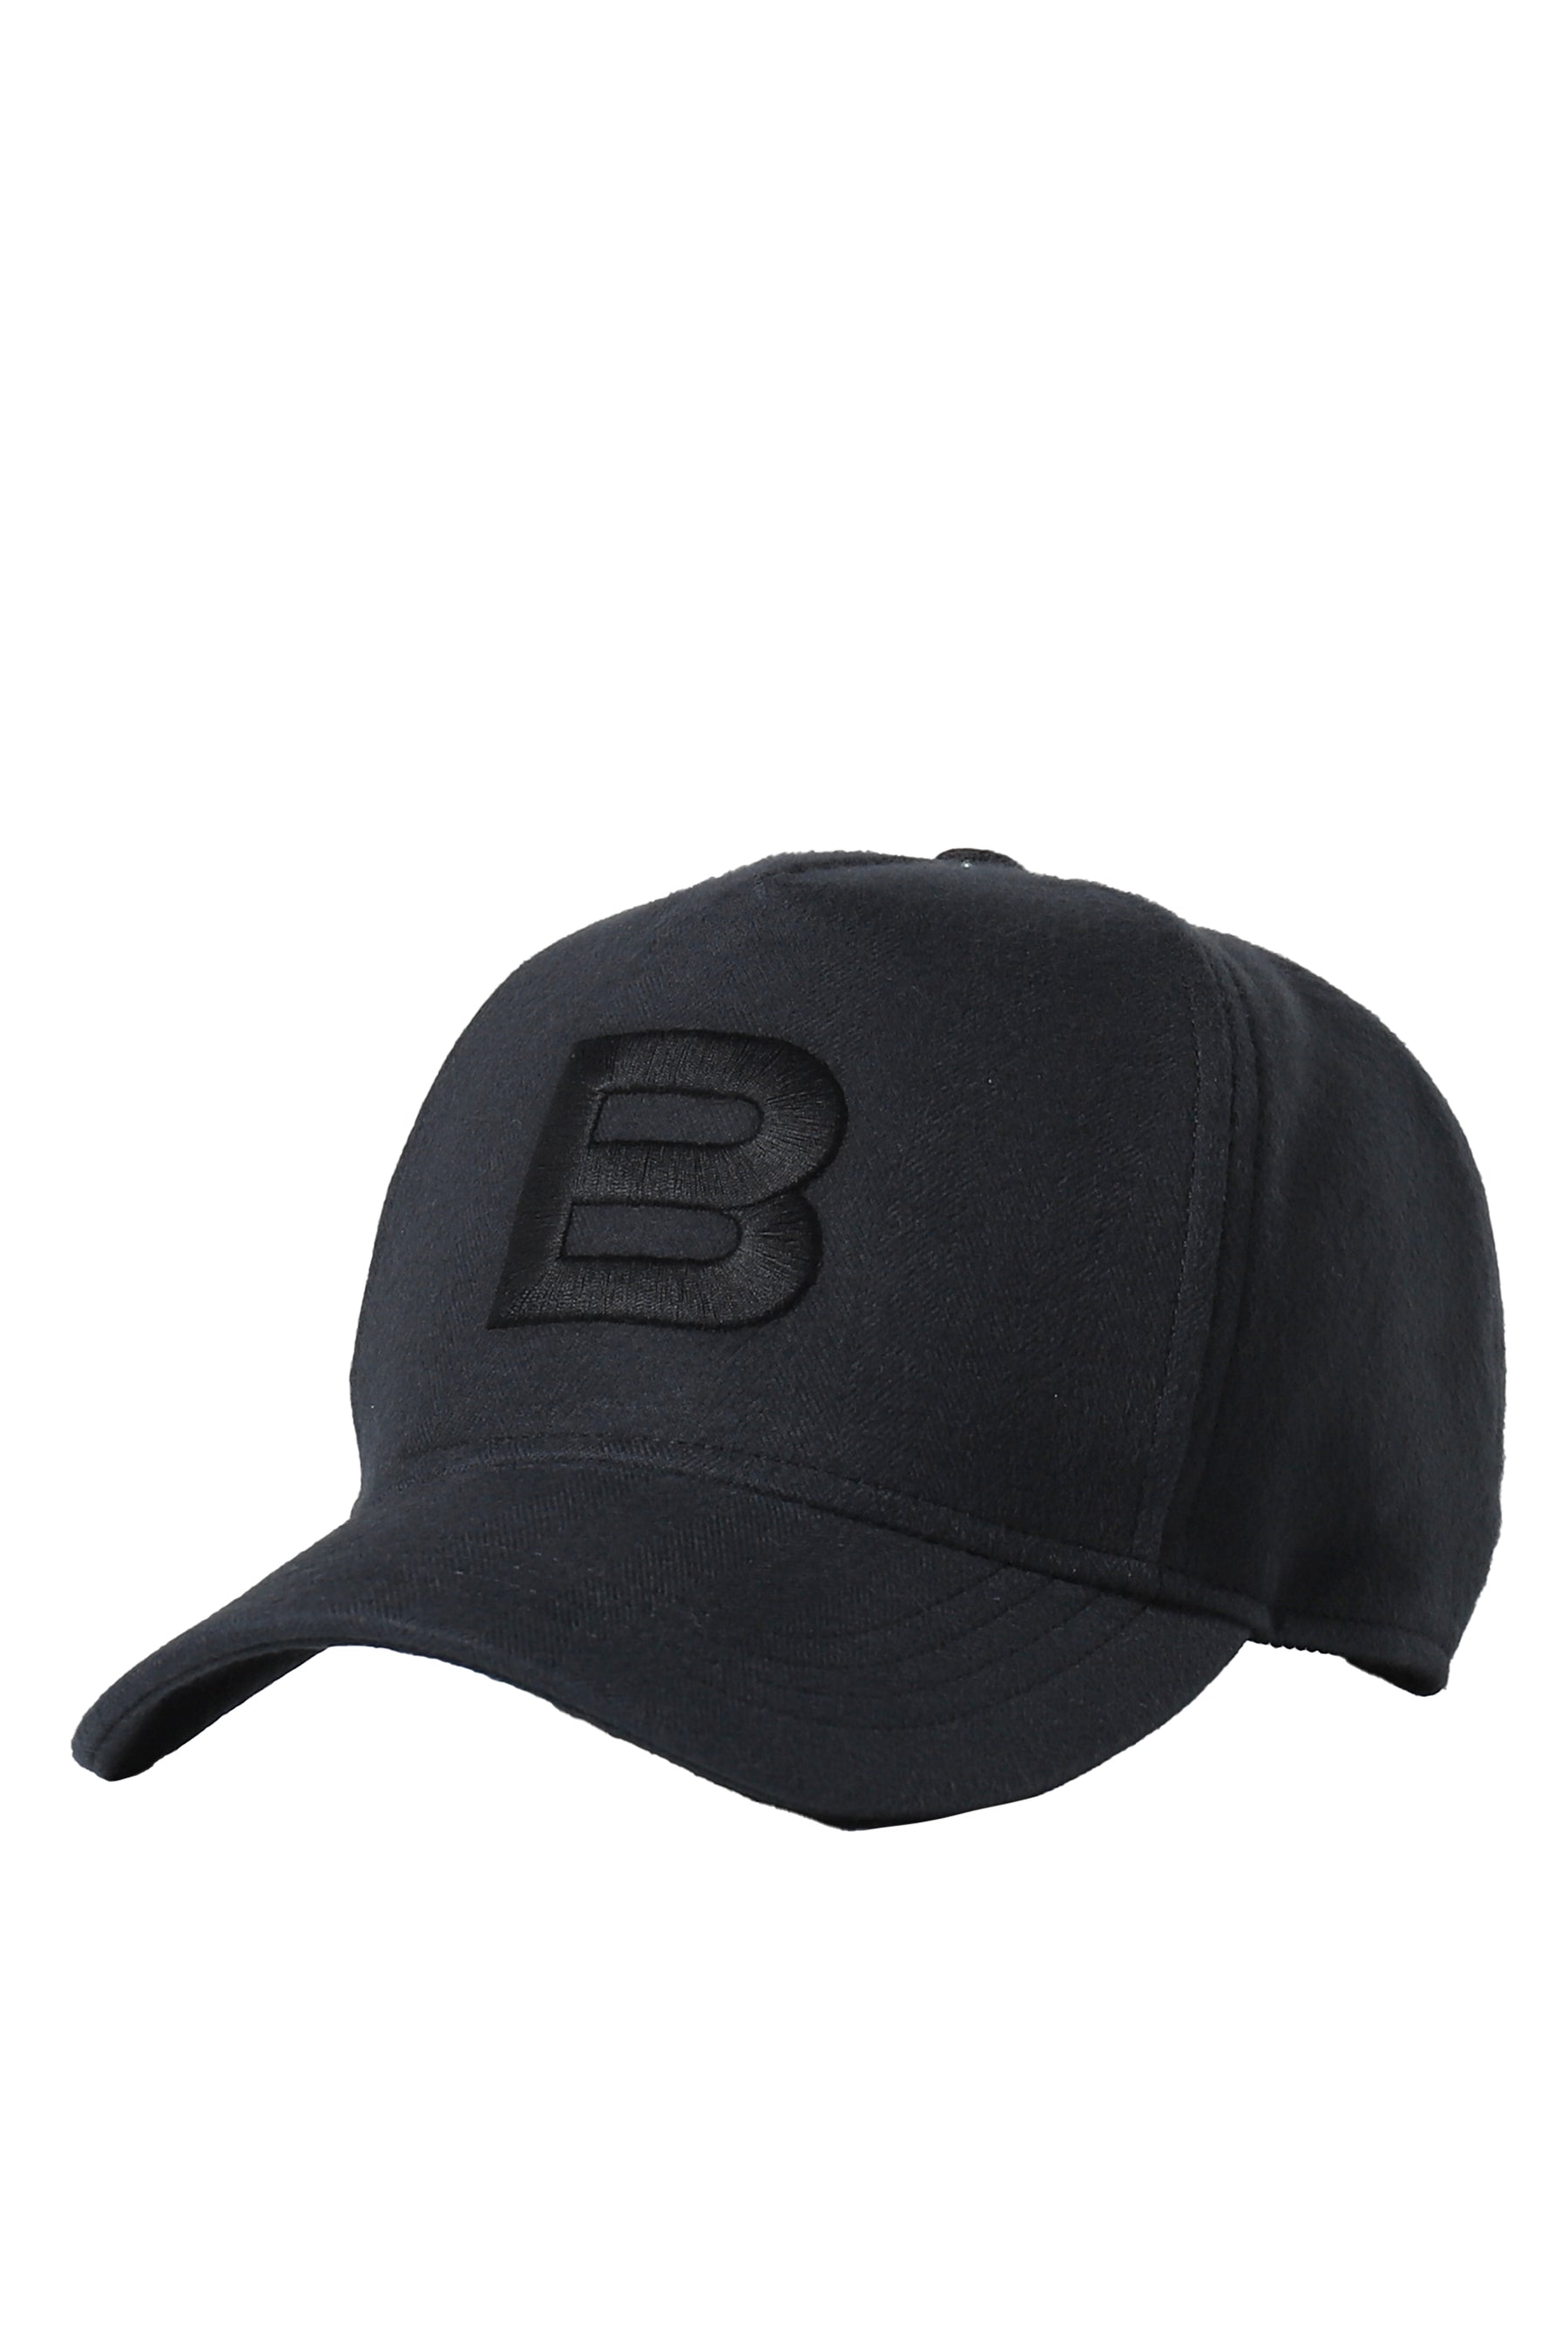 BASEBALL CAP / BLK BLK